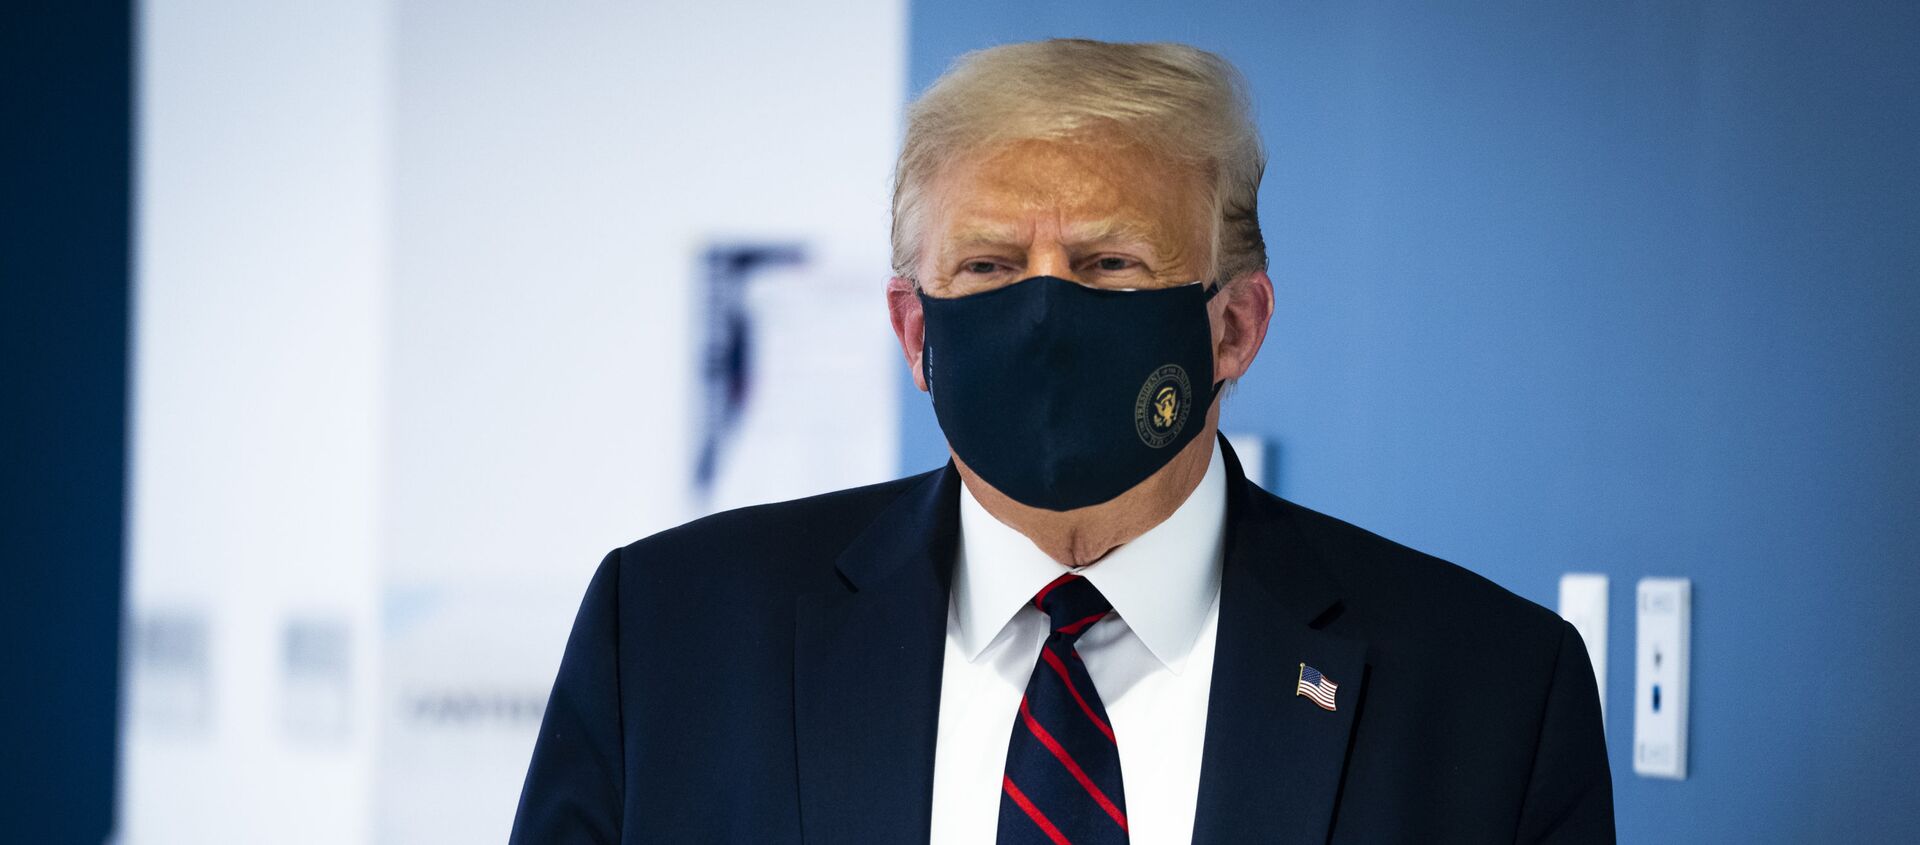 Президент США Дональд Трамп в защитной маске - Sputnik Южная Осетия, 1920, 05.10.2020